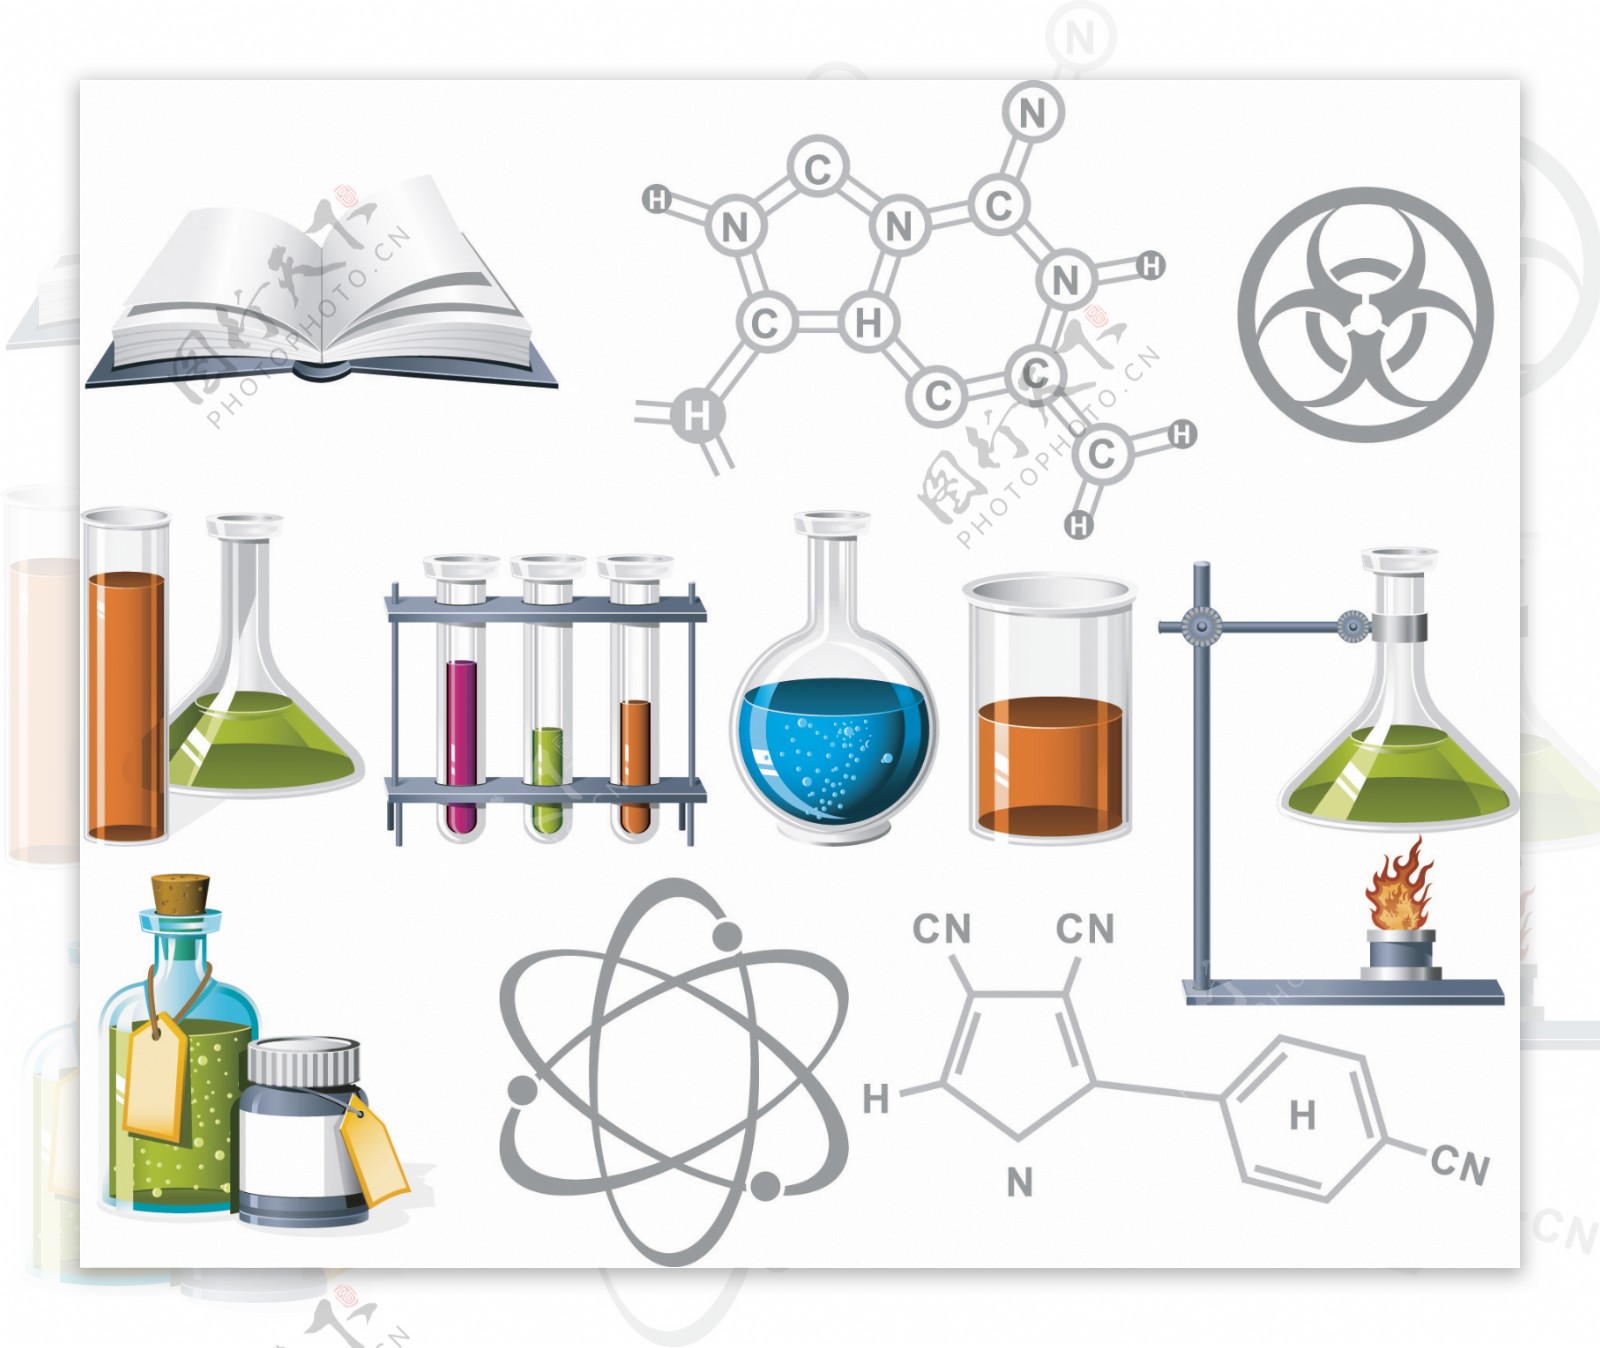 化学实验器皿以及书籍分子式素材